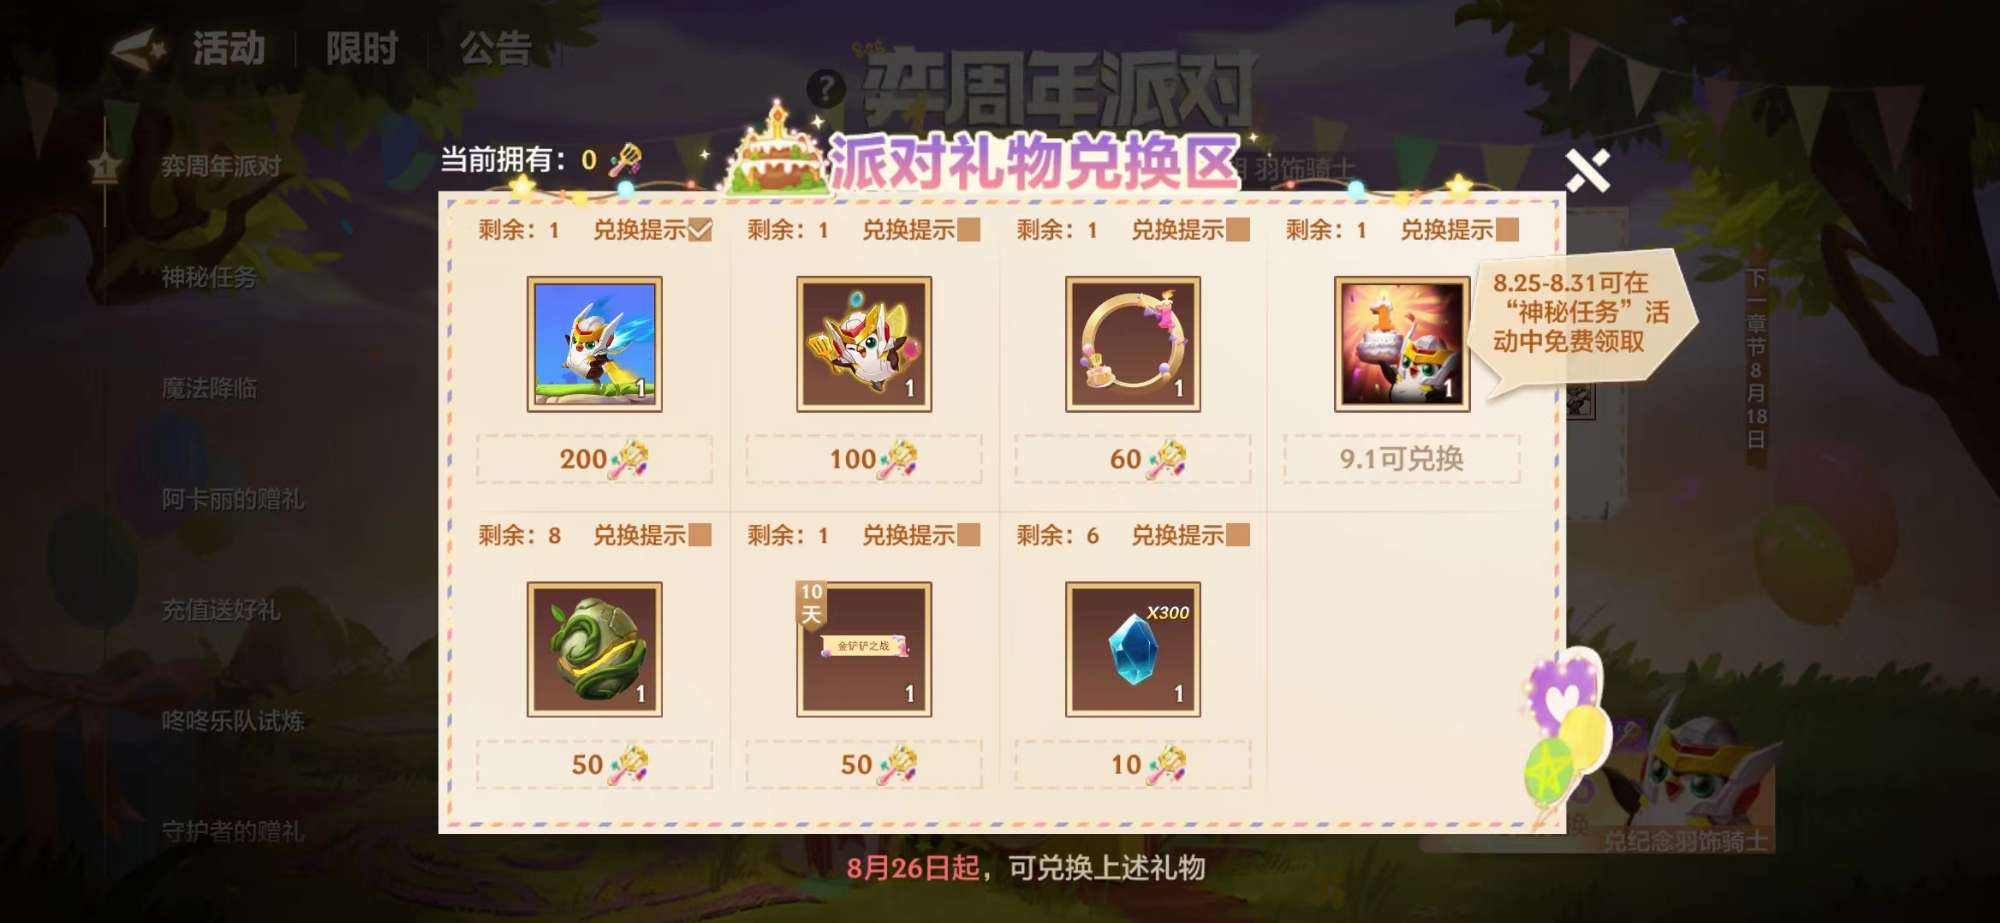 Tencent ‘chơi lớn’ ra mắt linh thú Akali Vệ Binh Tinh Tú tại TFT Mobile phiên bản Trung Quốc với mức giá ‘khá rẻ’ - ảnh 5